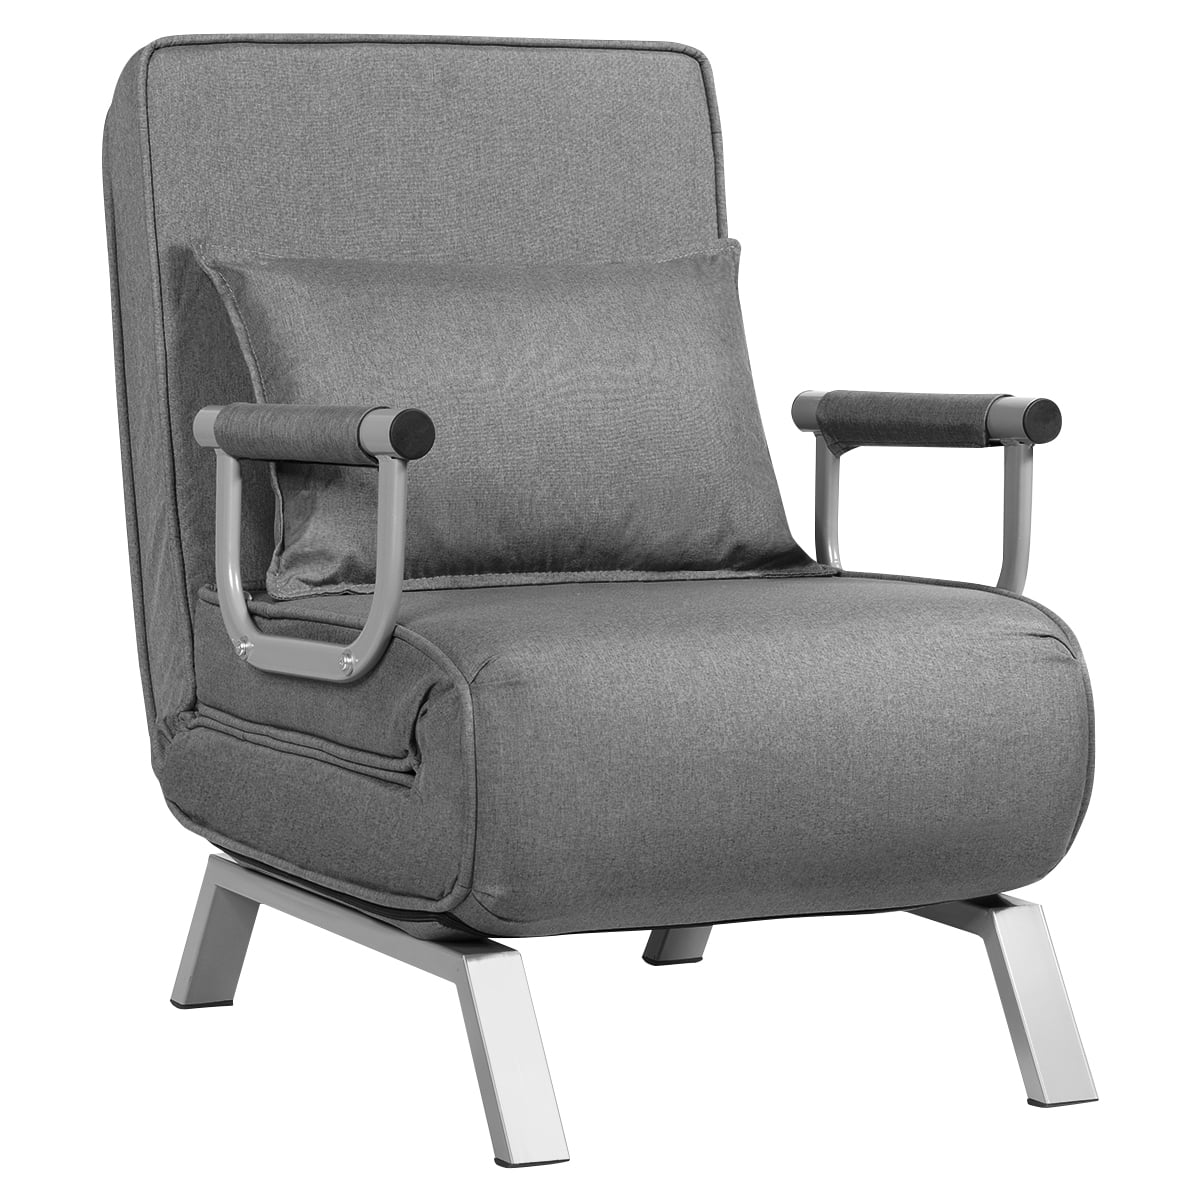 Gymax 5 Position Convertible Sofa Chair, Sofa Chair Sleeper